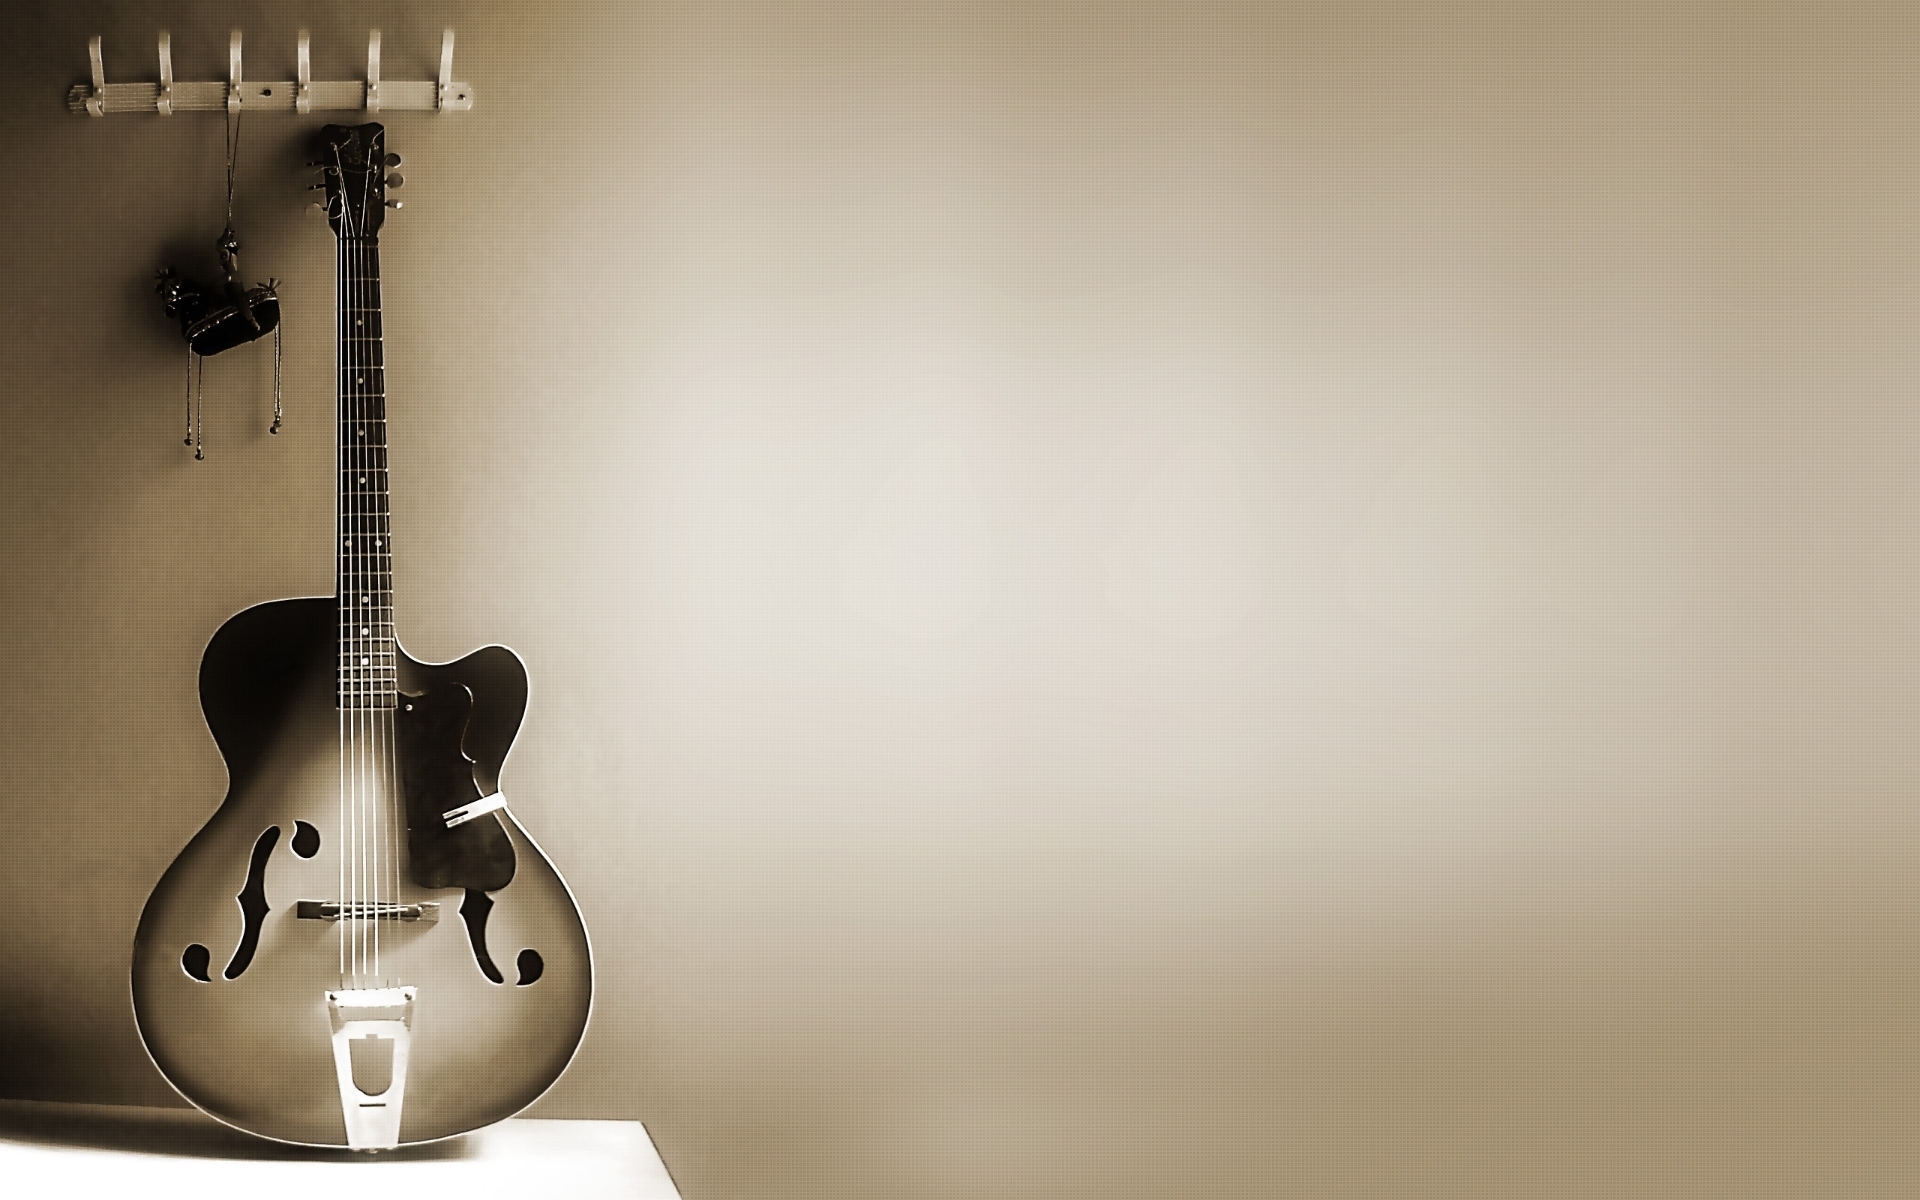 Guitar-guitar-13515072-1920-1200